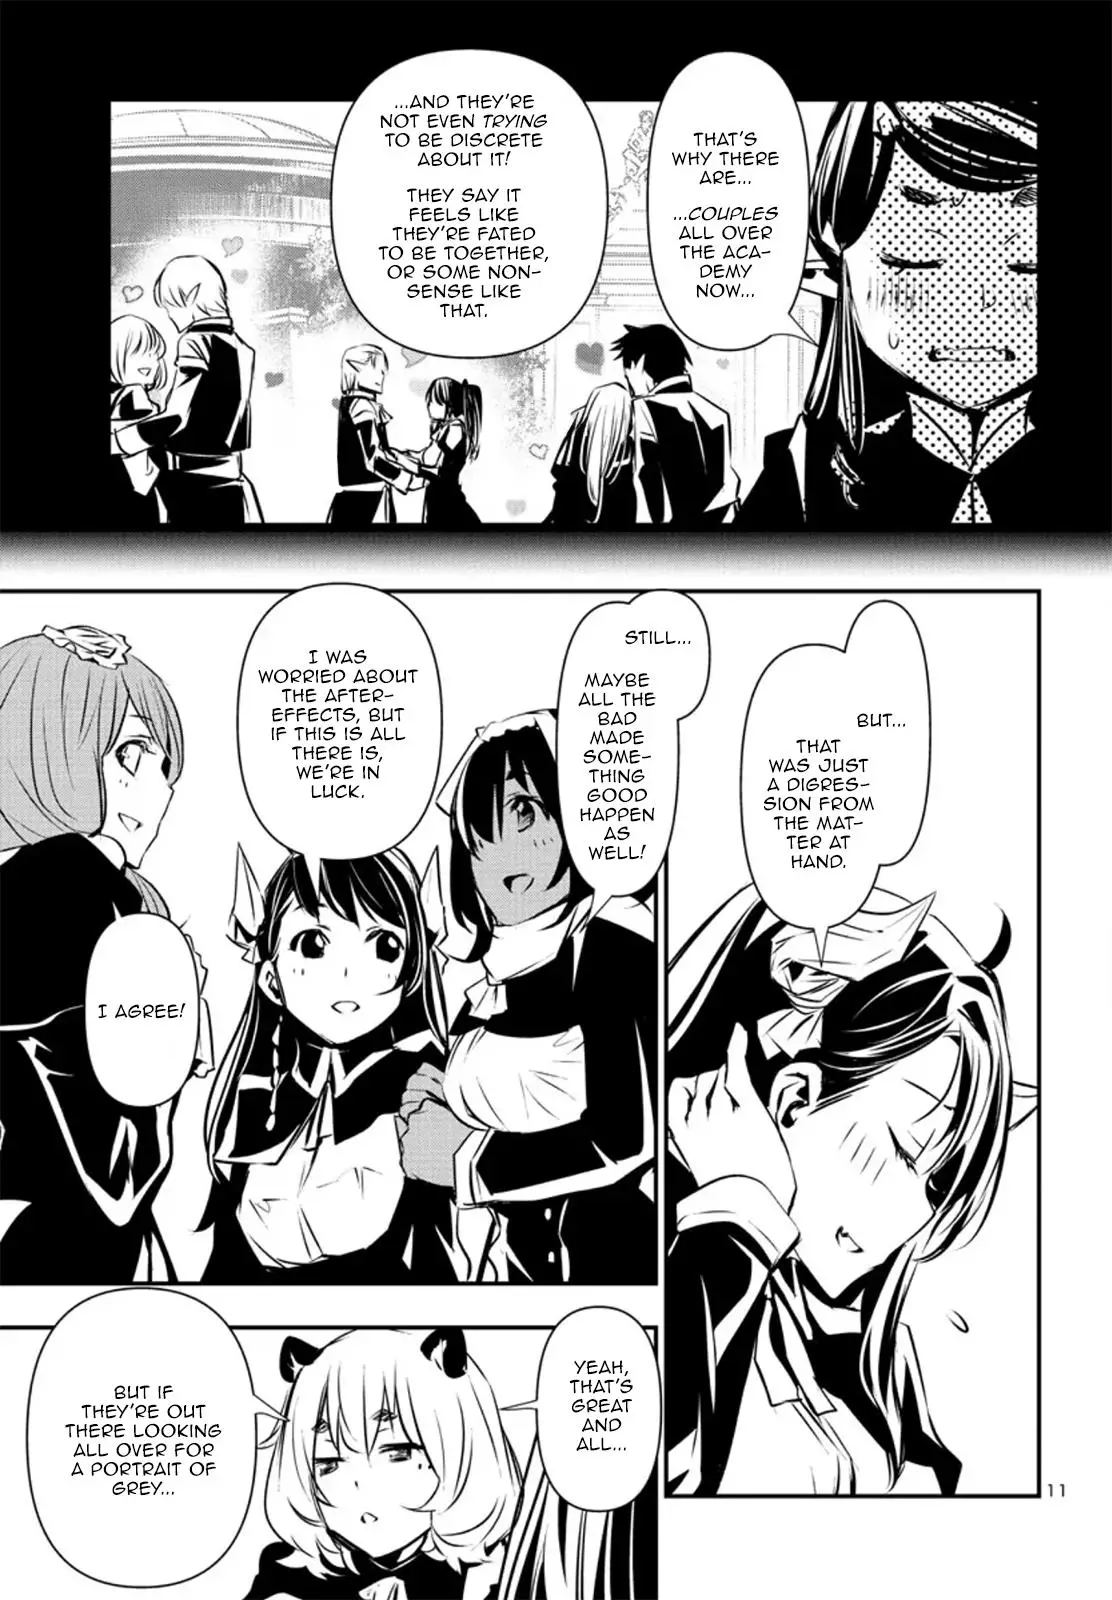 Shinju no Nectar - 75 page 12-5871ce4e